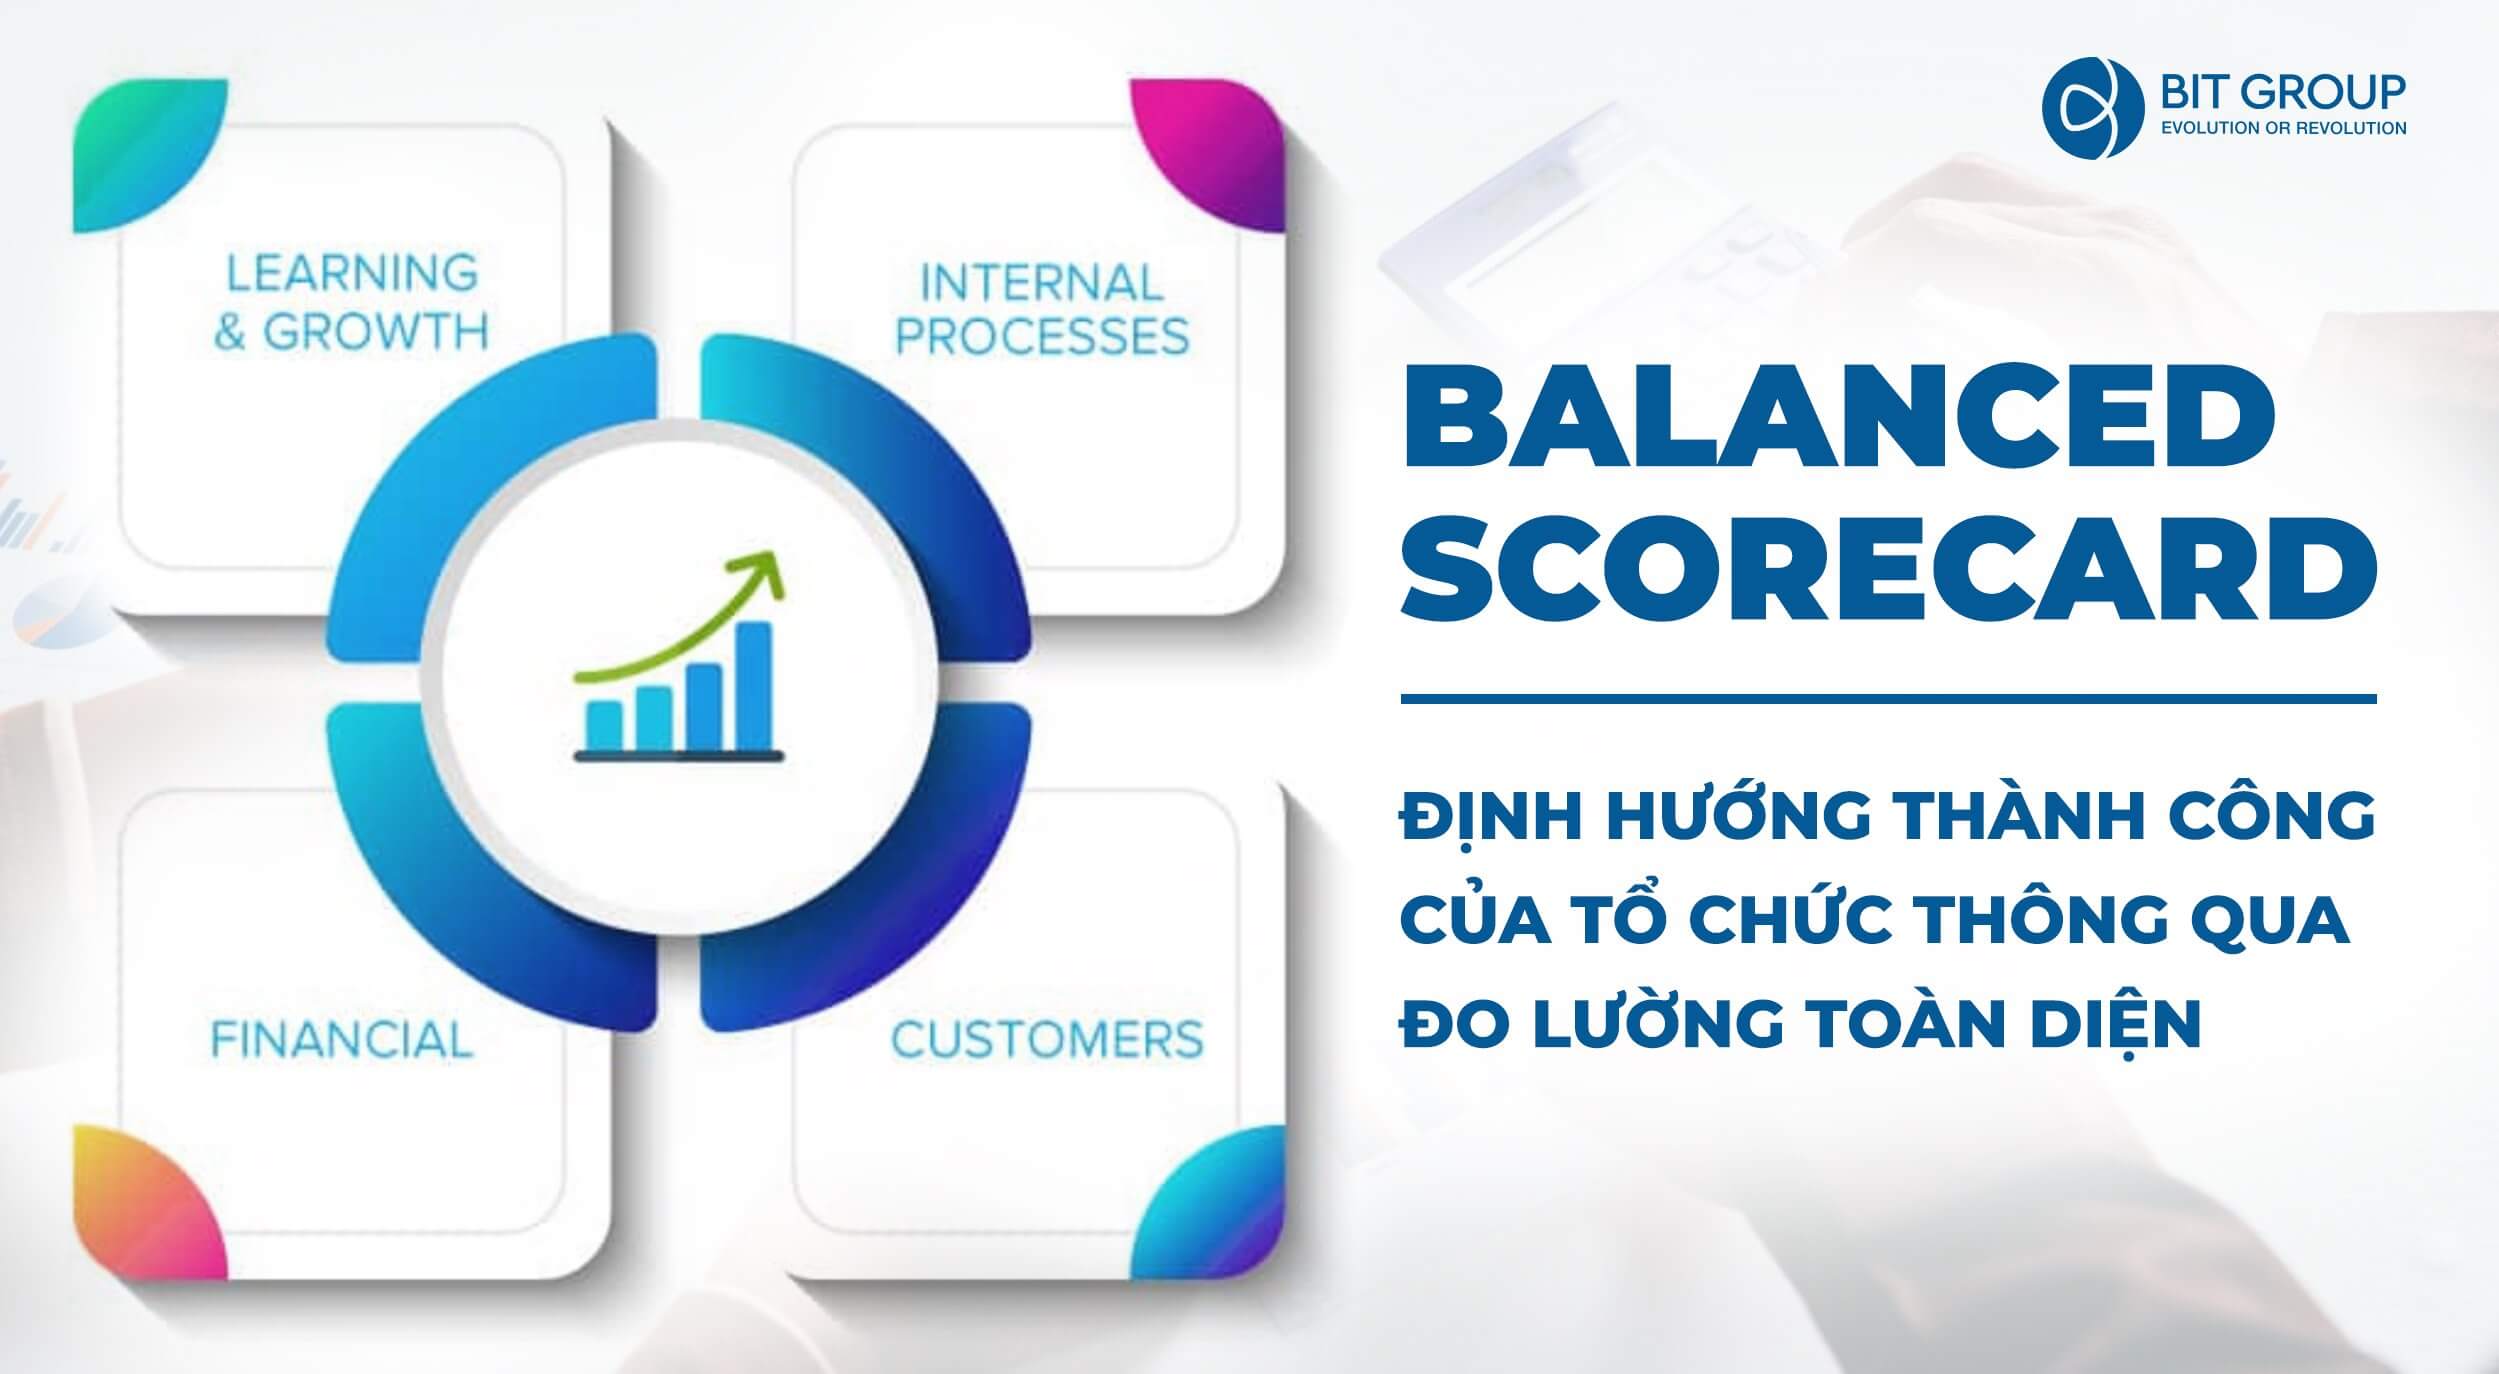 Balanced Scorecard (BSC): Định hướng thành công của tổ chức thông qua đo lường toàn diện